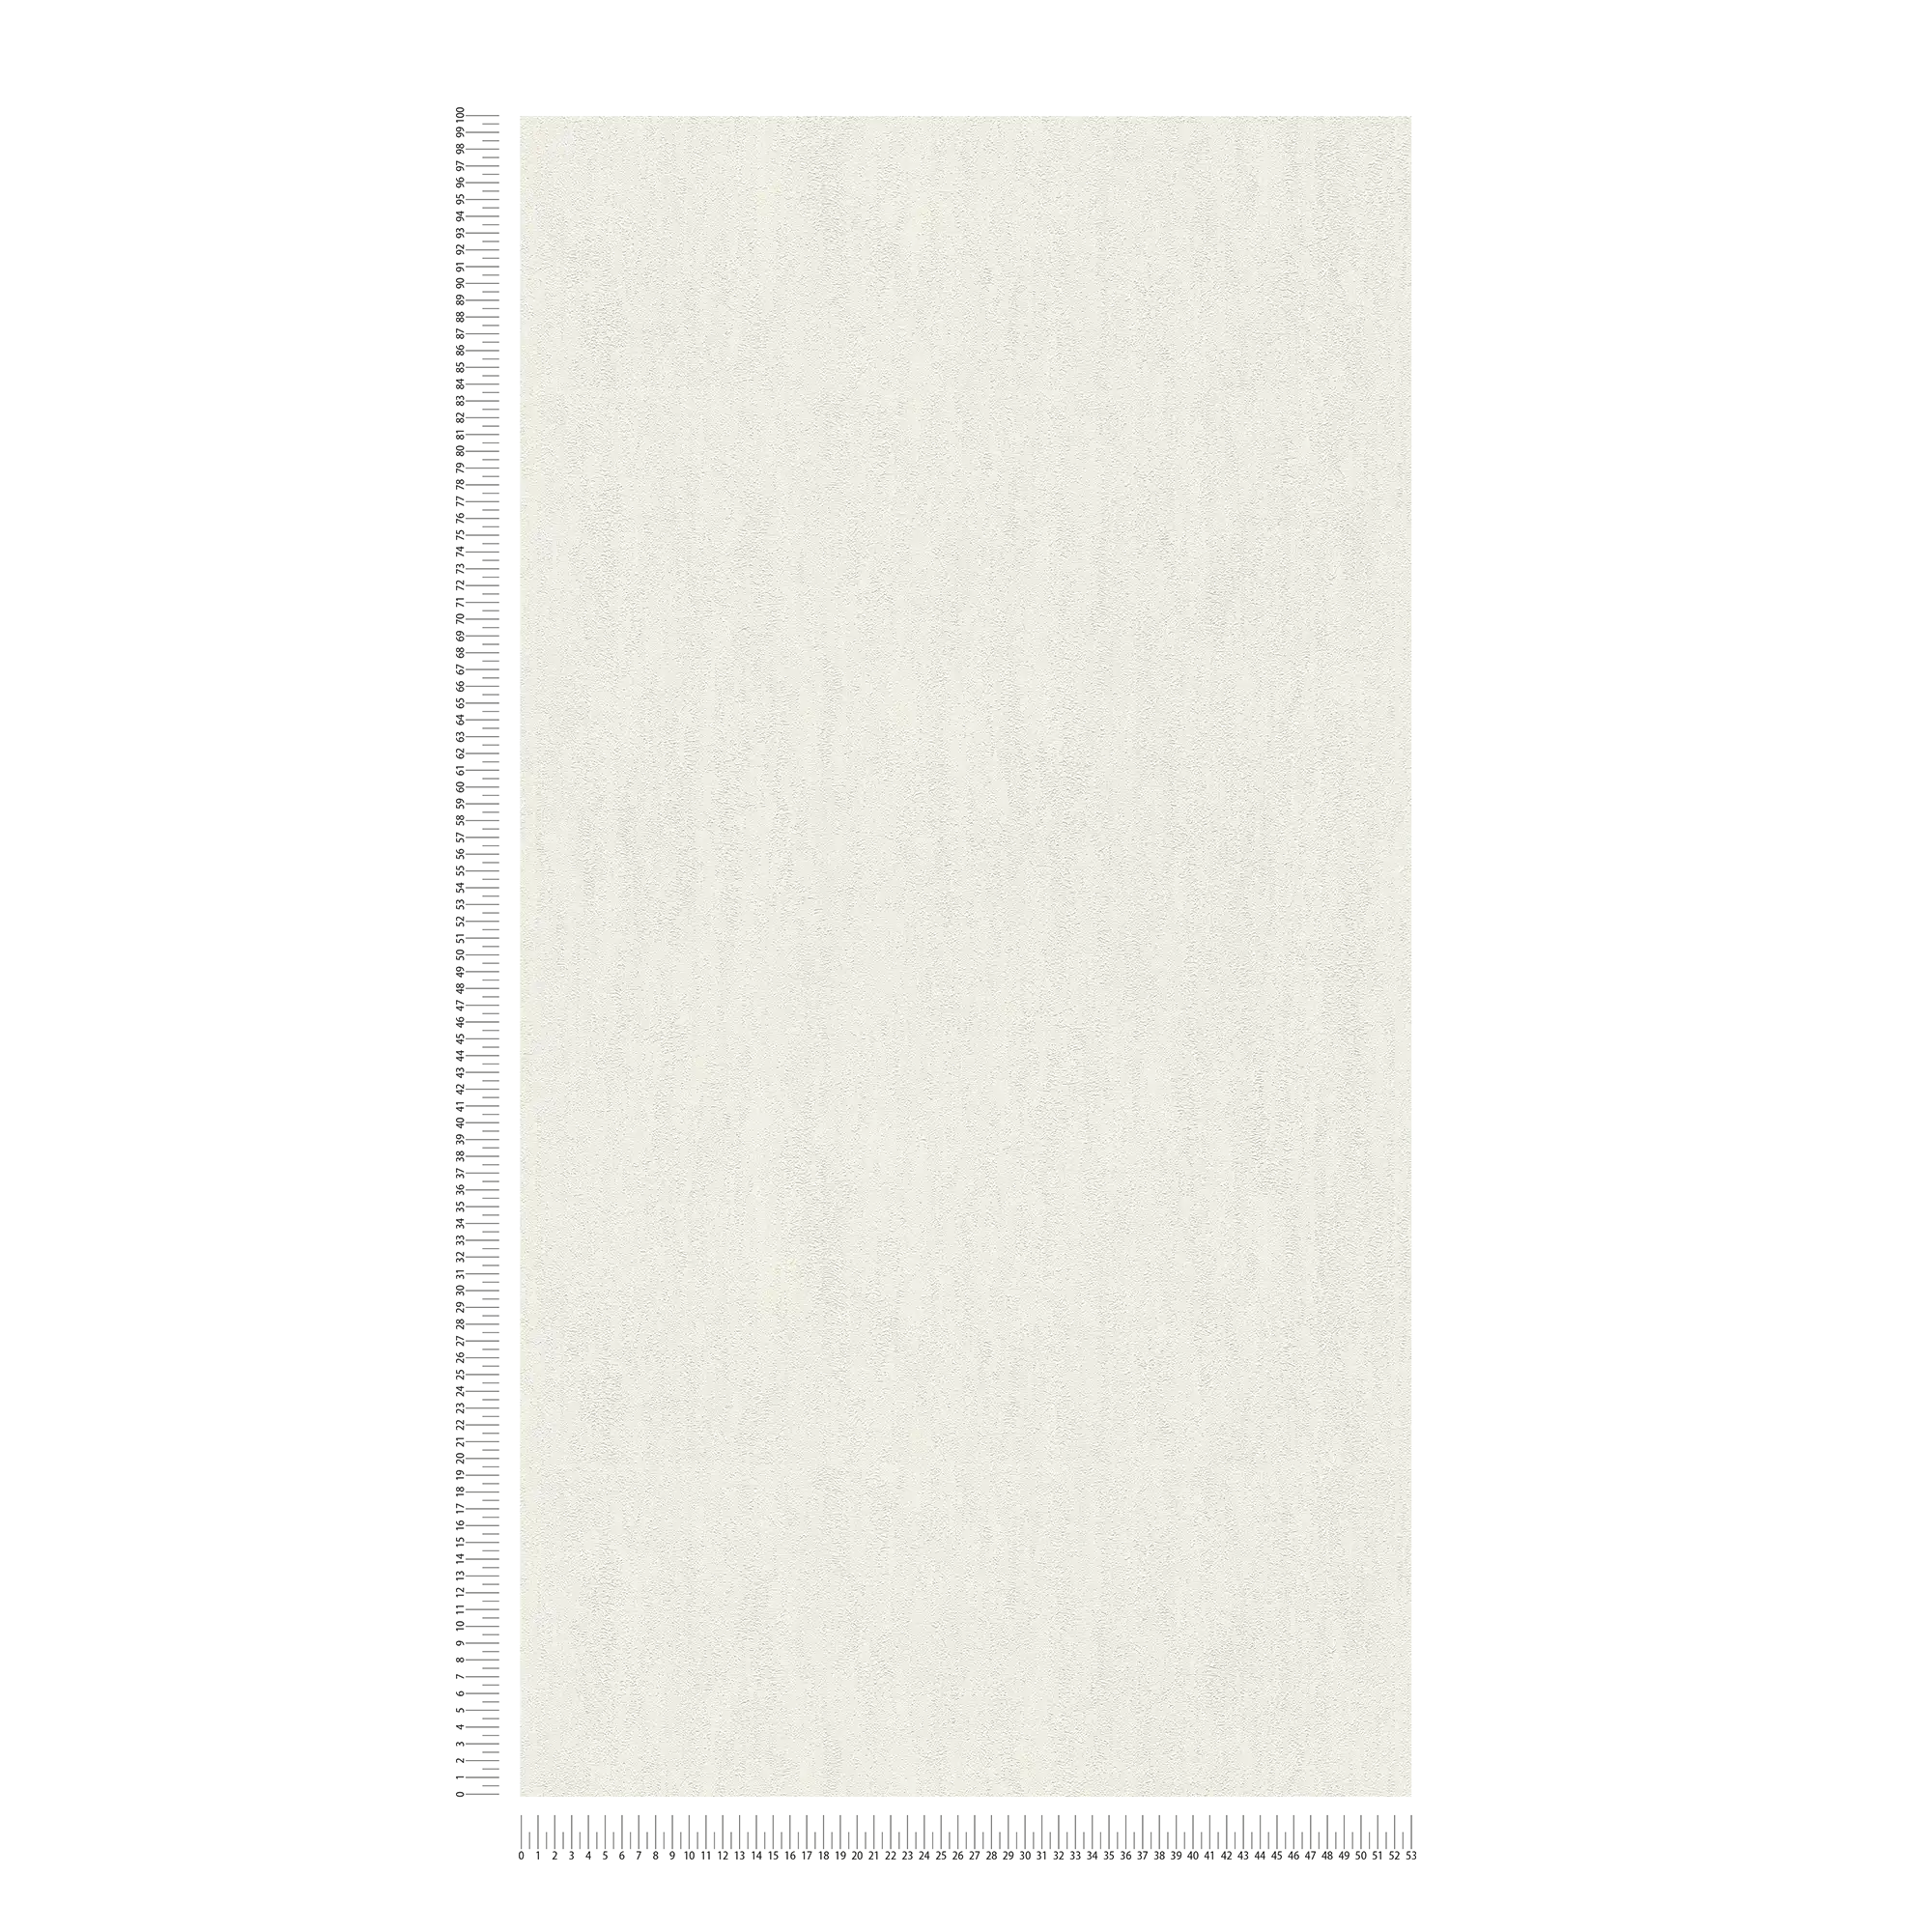             Carta da parati in tessuto non tessuto bianca con motivo a struttura grezza
        